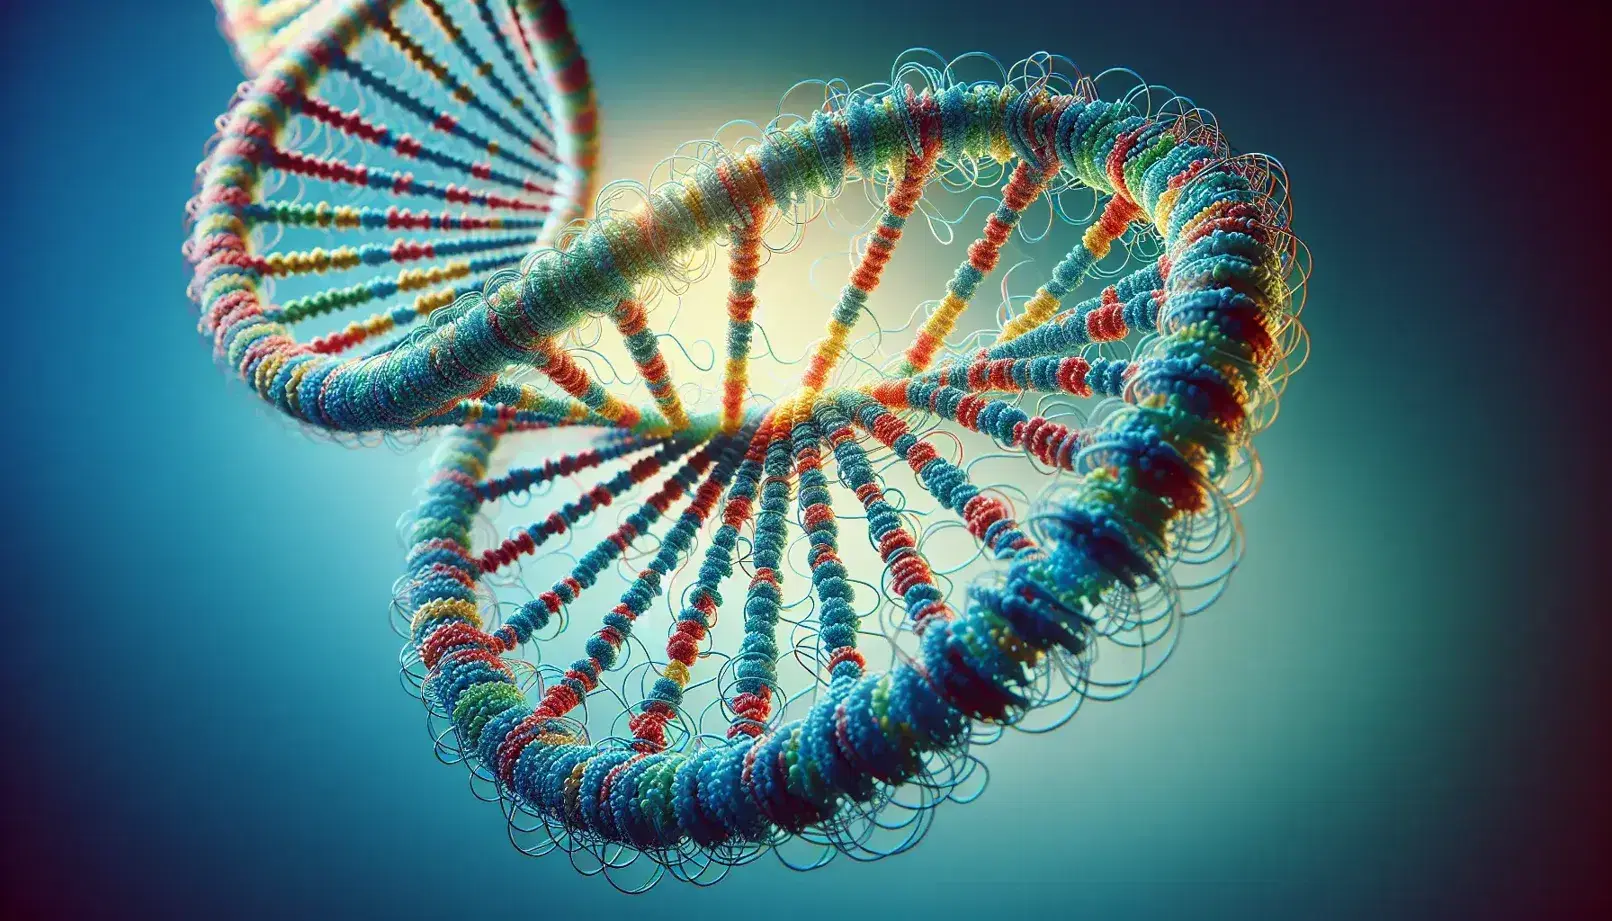 Estructura detallada de una doble hélice de ADN en 3D con pares de bases en tonos de azul, rojo, verde y amarillo sobre fondo degradado azul.